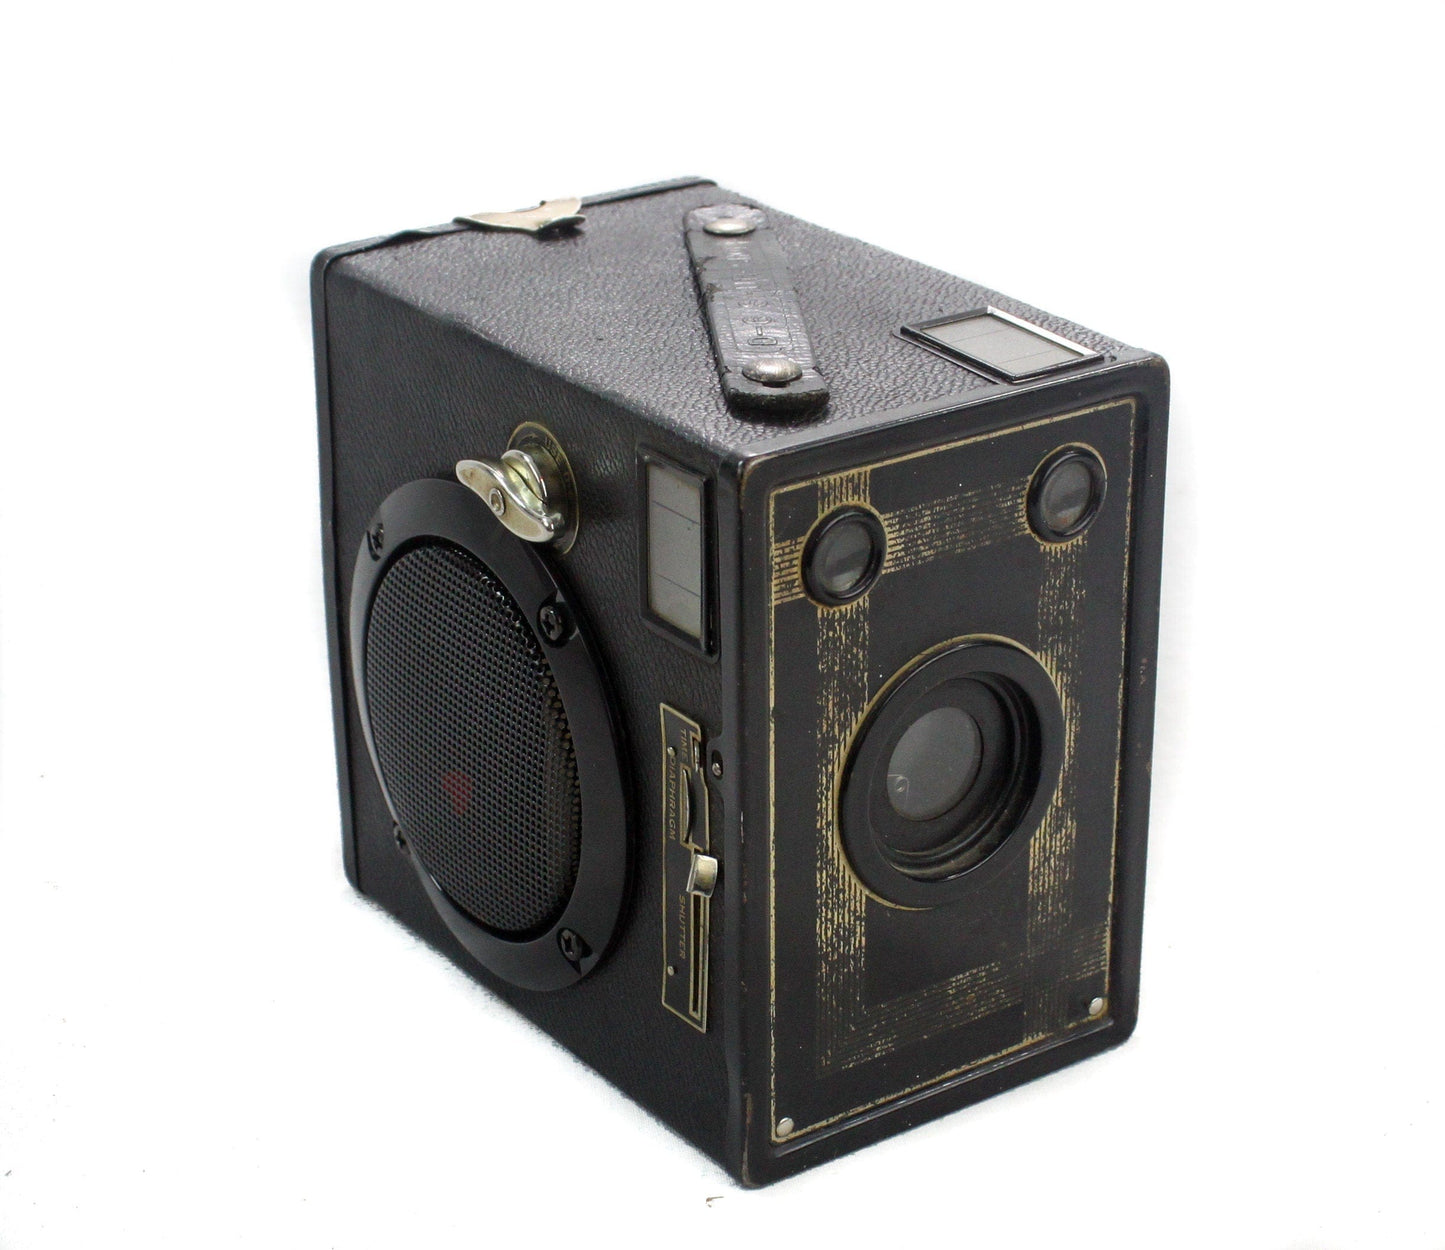 LightAndTimeArt Speaker Bags, Covers & Cases Amazon 3rd Gen Echo Dot Holder/Stand - ANSCO Shur Shot Camera - Music Lover Gift - New Front Faces